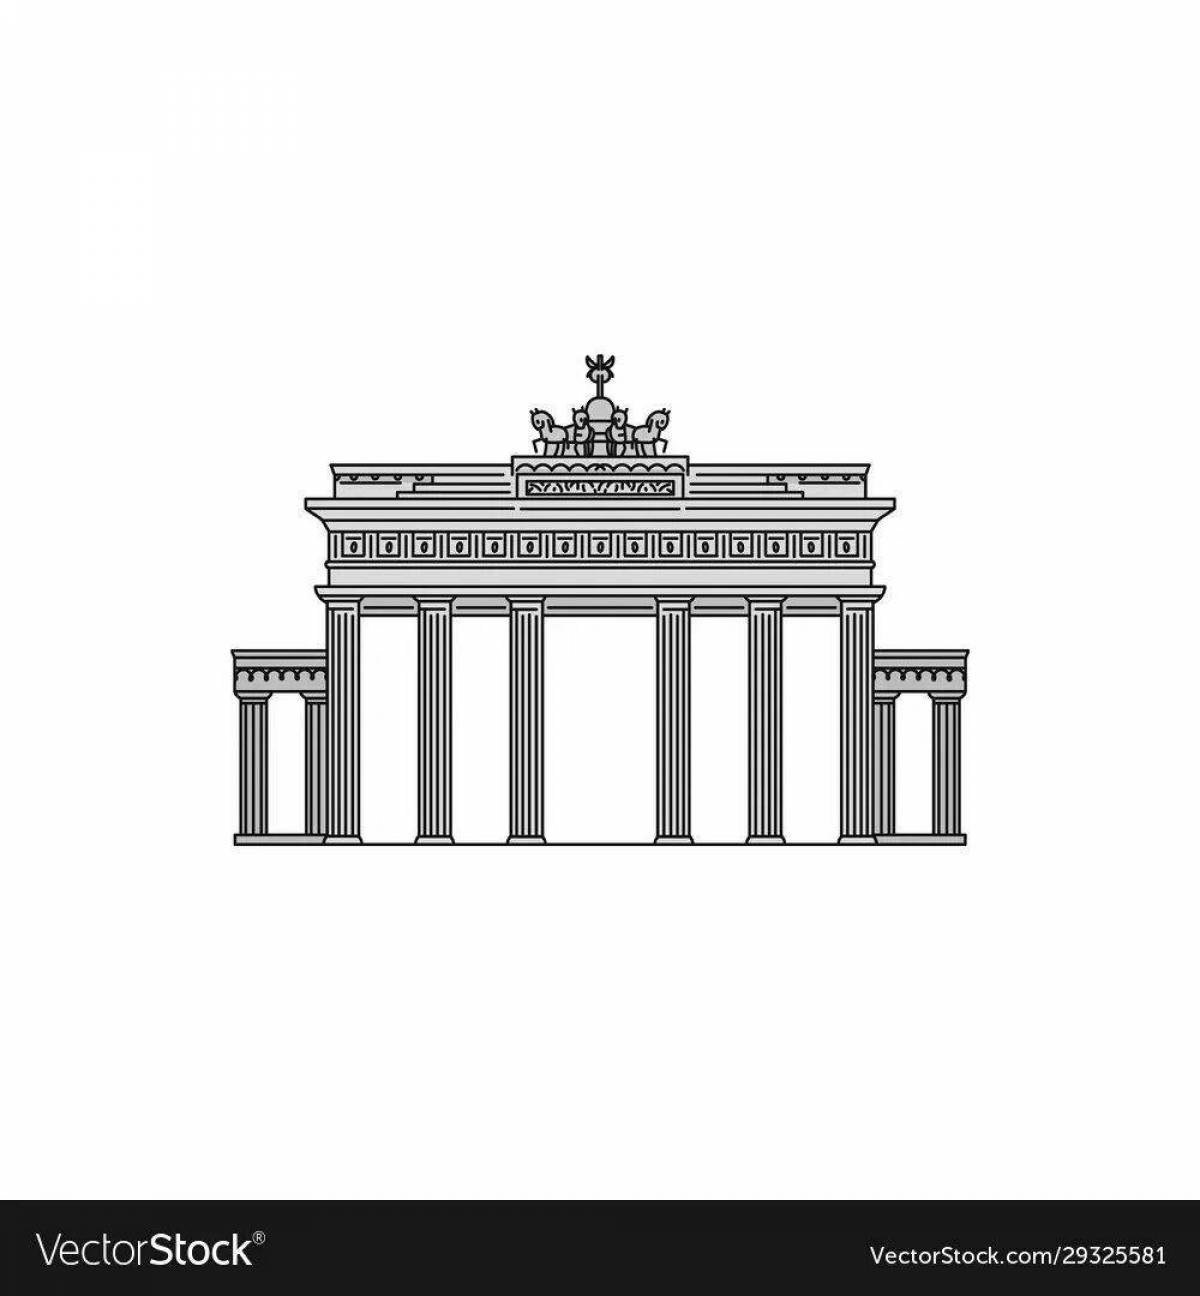 Brandenburg Gate #6